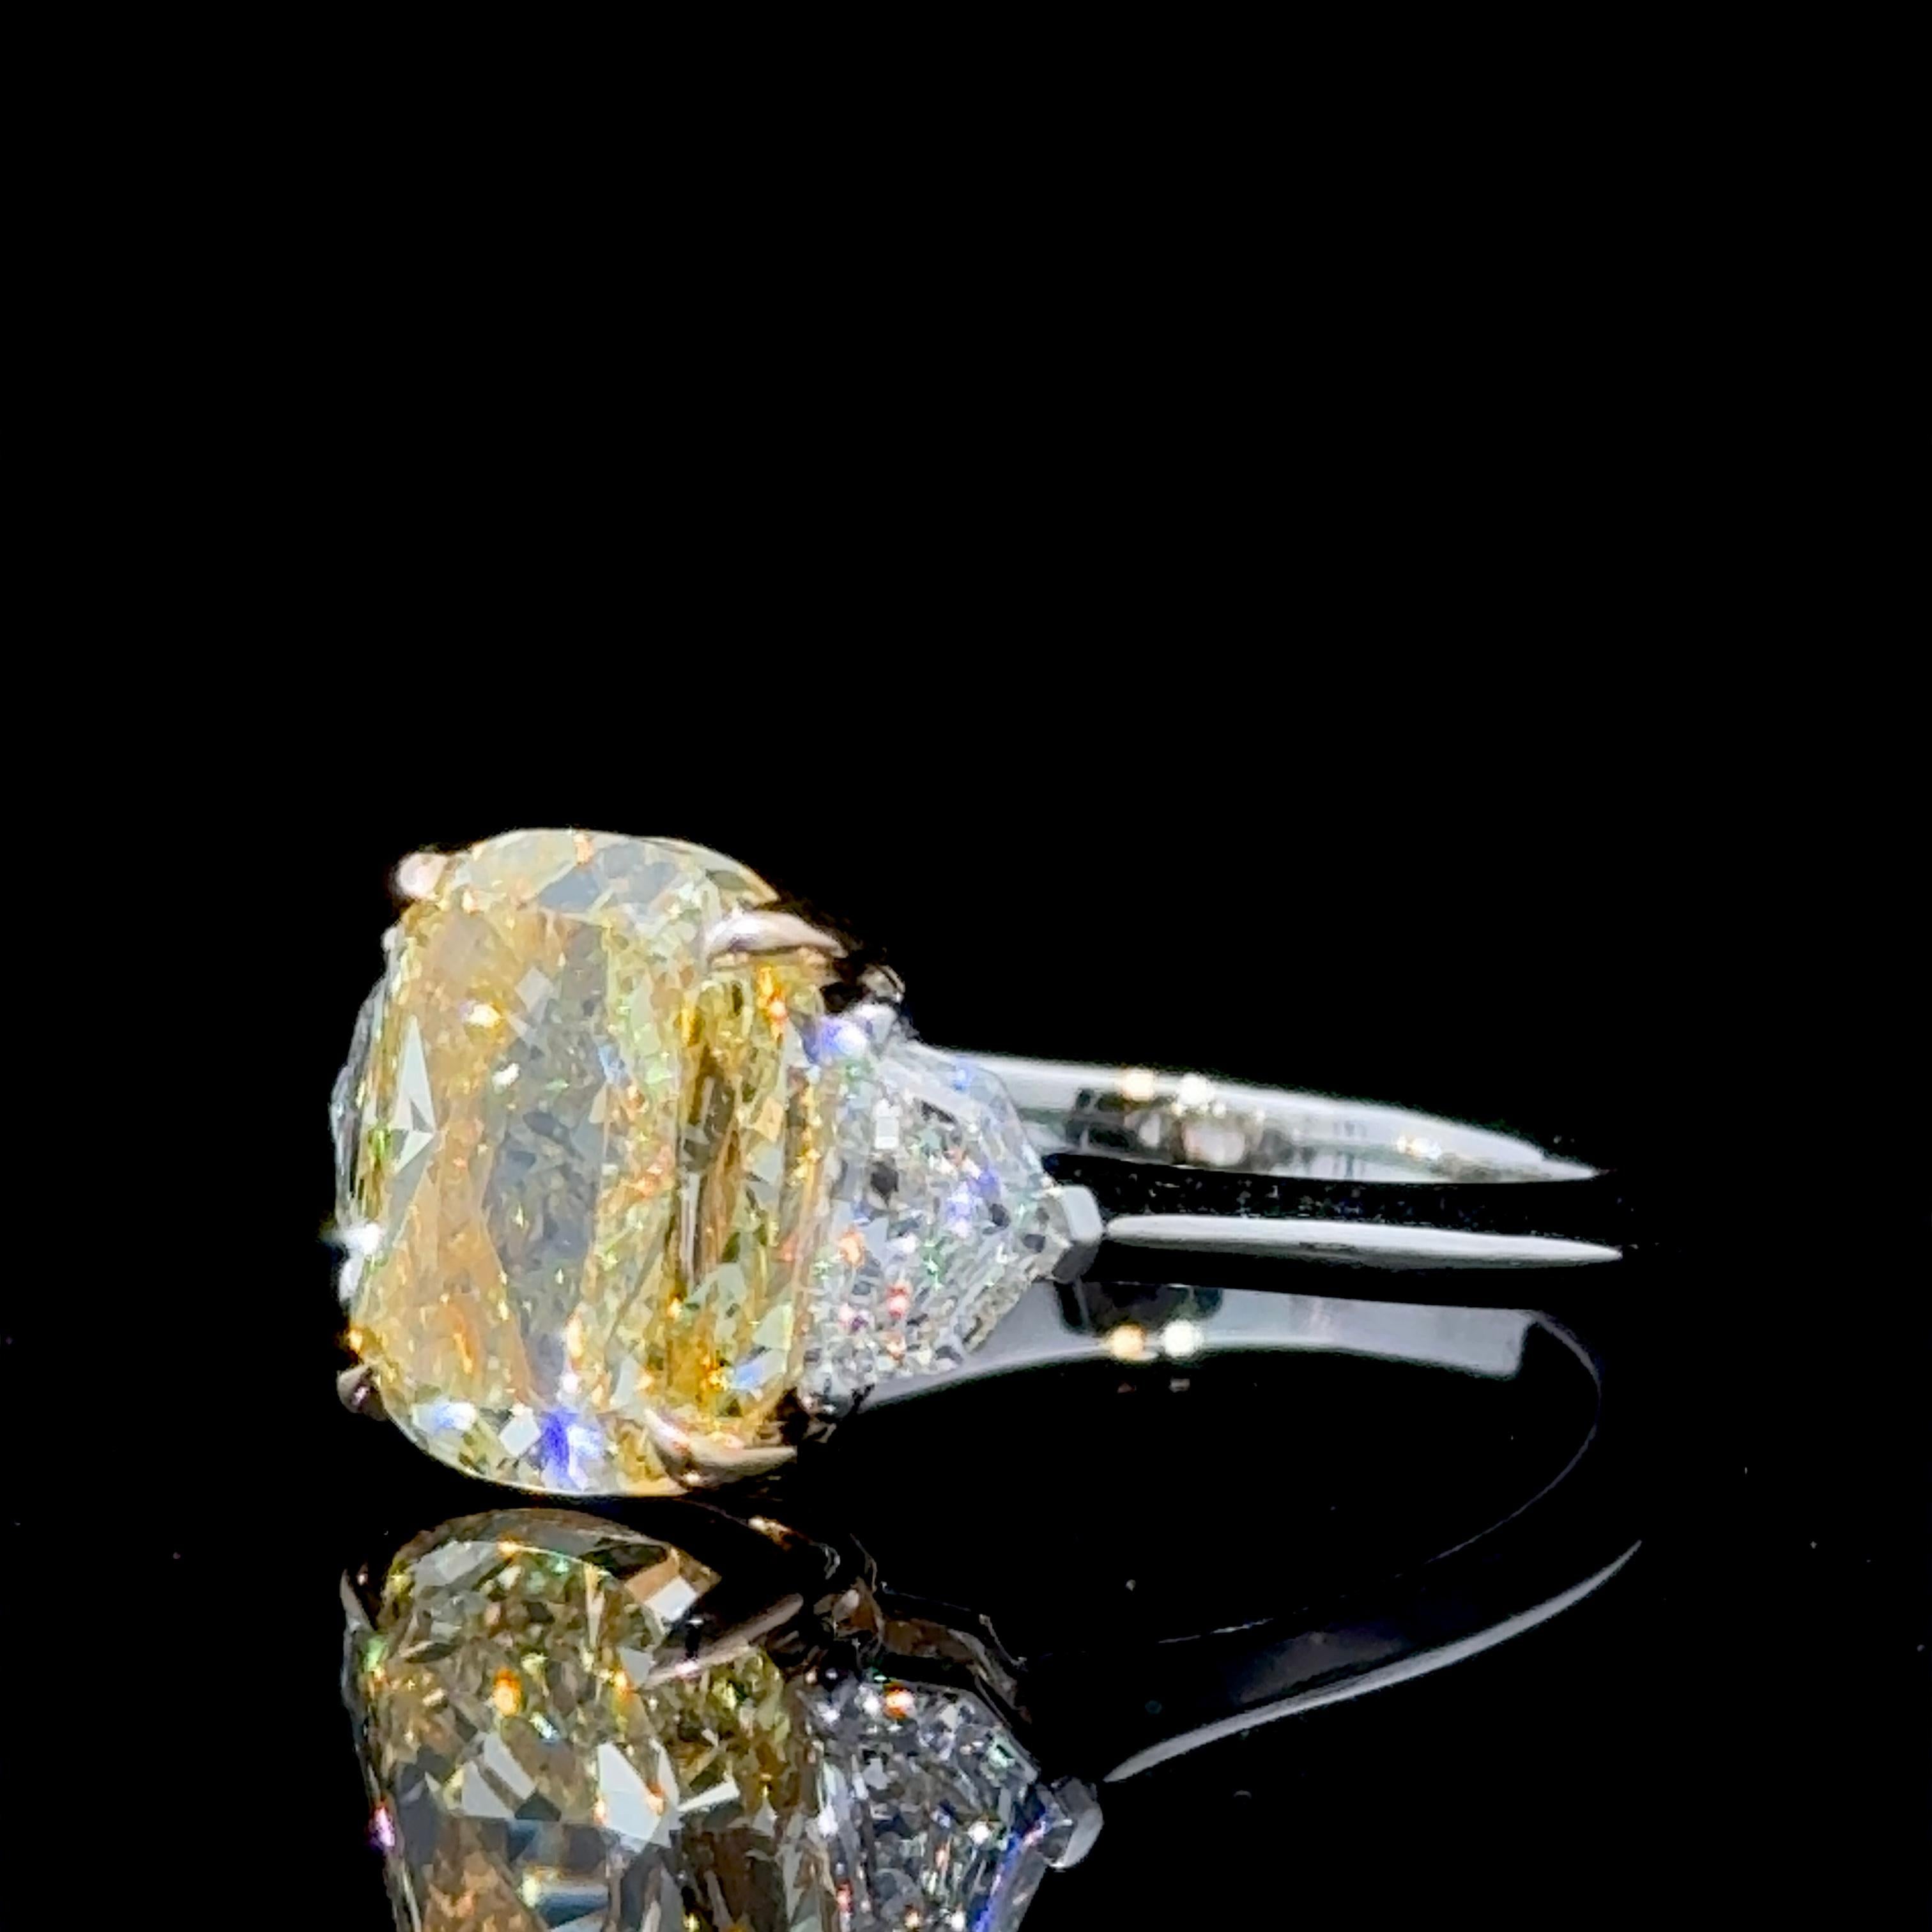 Parmi les diamants jaunes taillés en coussin, les formes allongées en coussin sont les plus convoitées et les plus désirées.
Ils ont l'air plus grands que leur poids ne le laisse supposer, et ils ressemblent à de véritables pierres